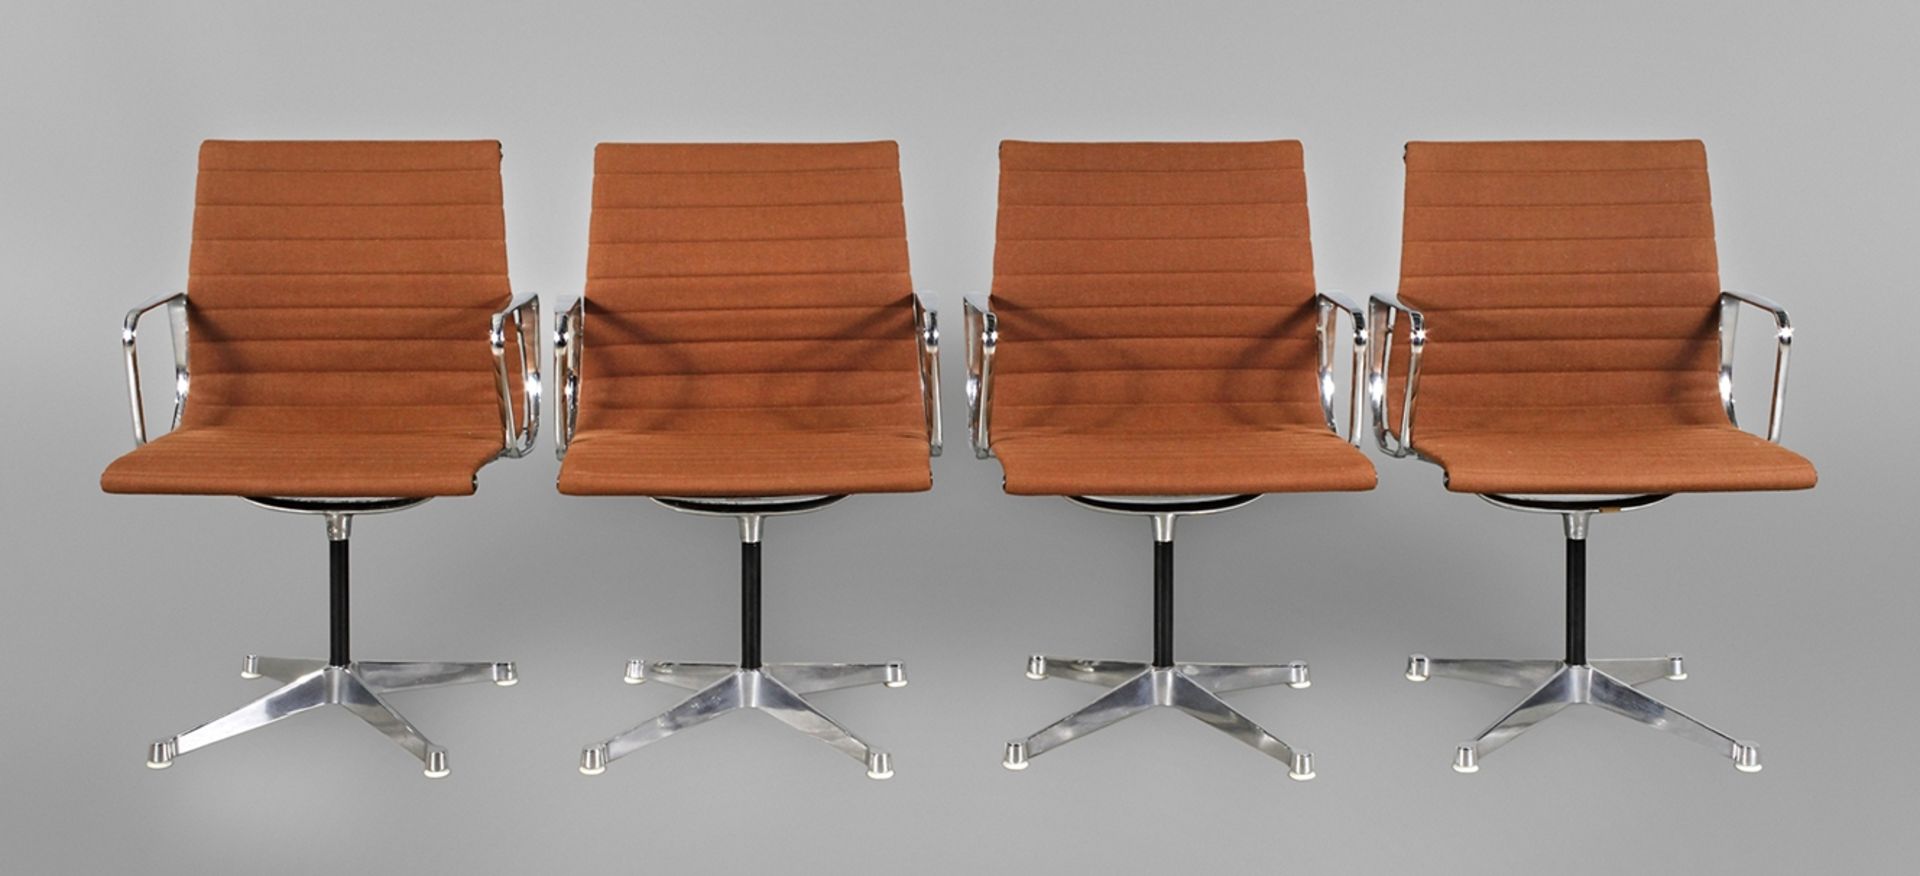 Vier Eames ChairsModell EA108 Alu, Entwurf Charles und Ray Eames, Ausführung Vitra für Hermann